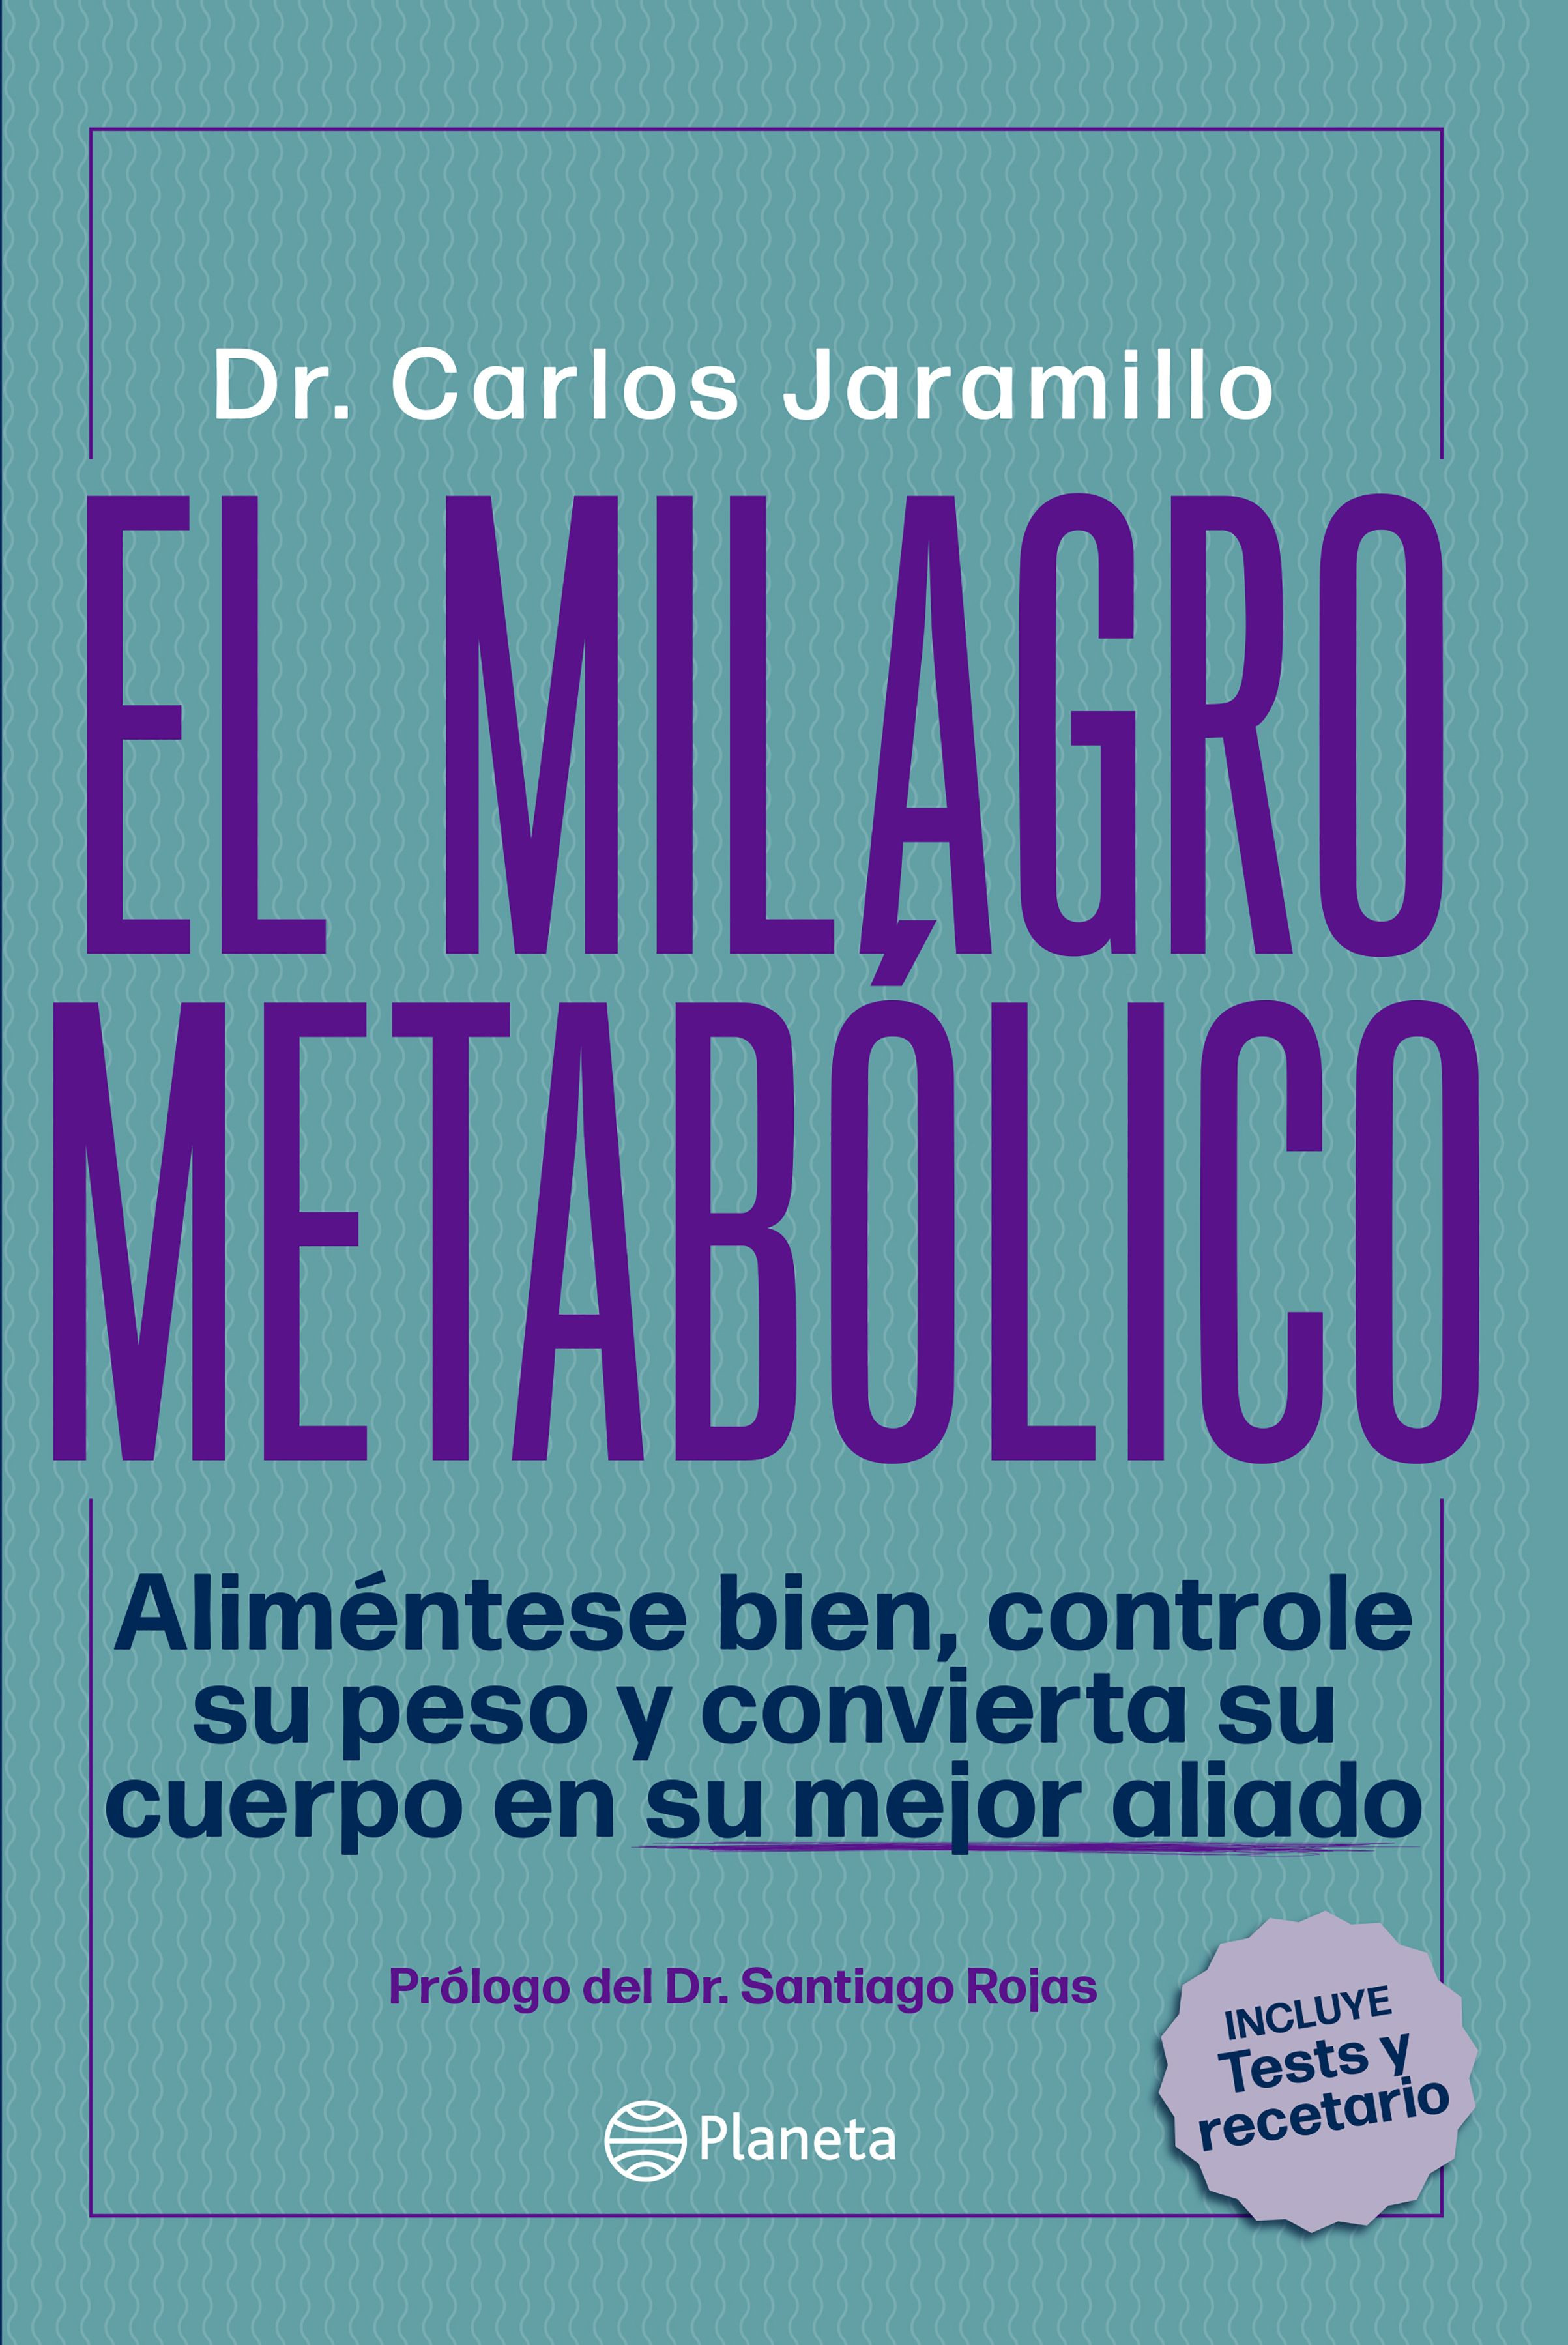 Imagen El Milagro Metabólico. Dr. Carlos  Jaramillo